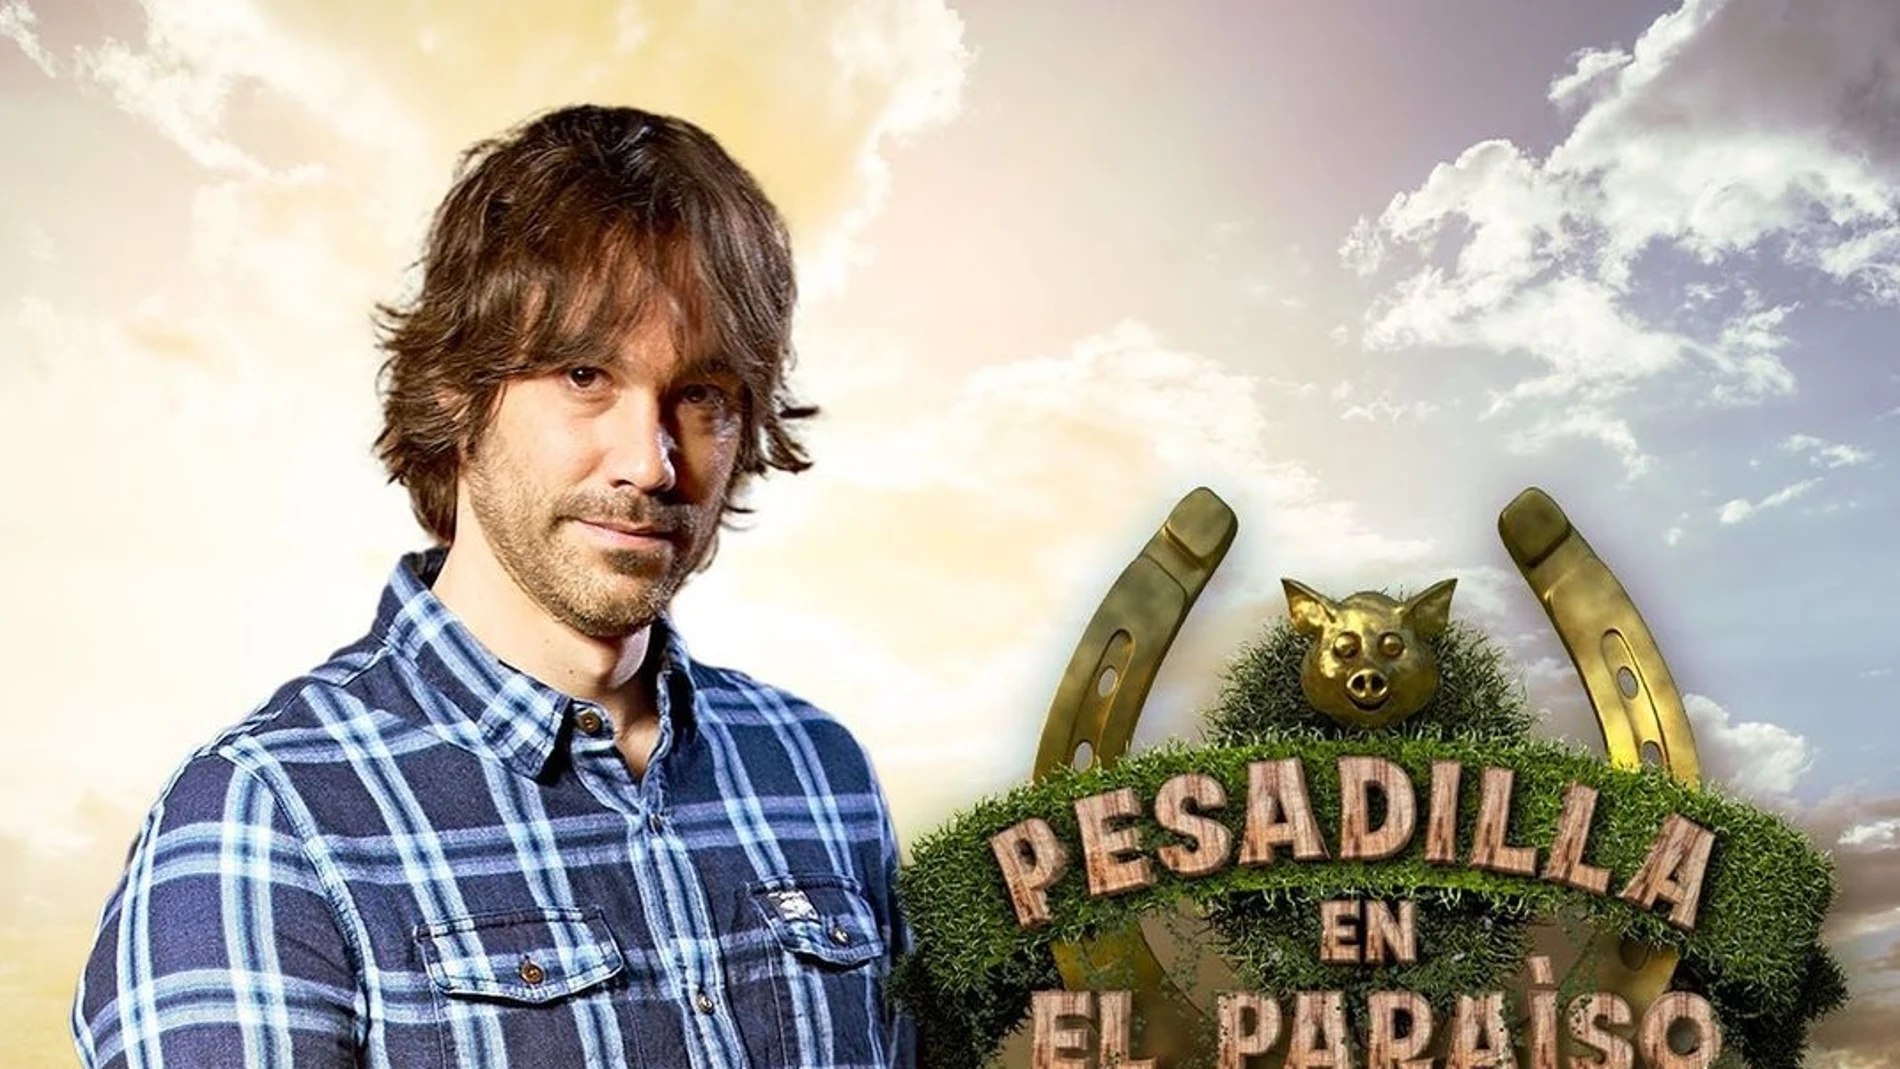 Borja Estrada es el ganador de 'Pesadilla en El Paraíso 2'